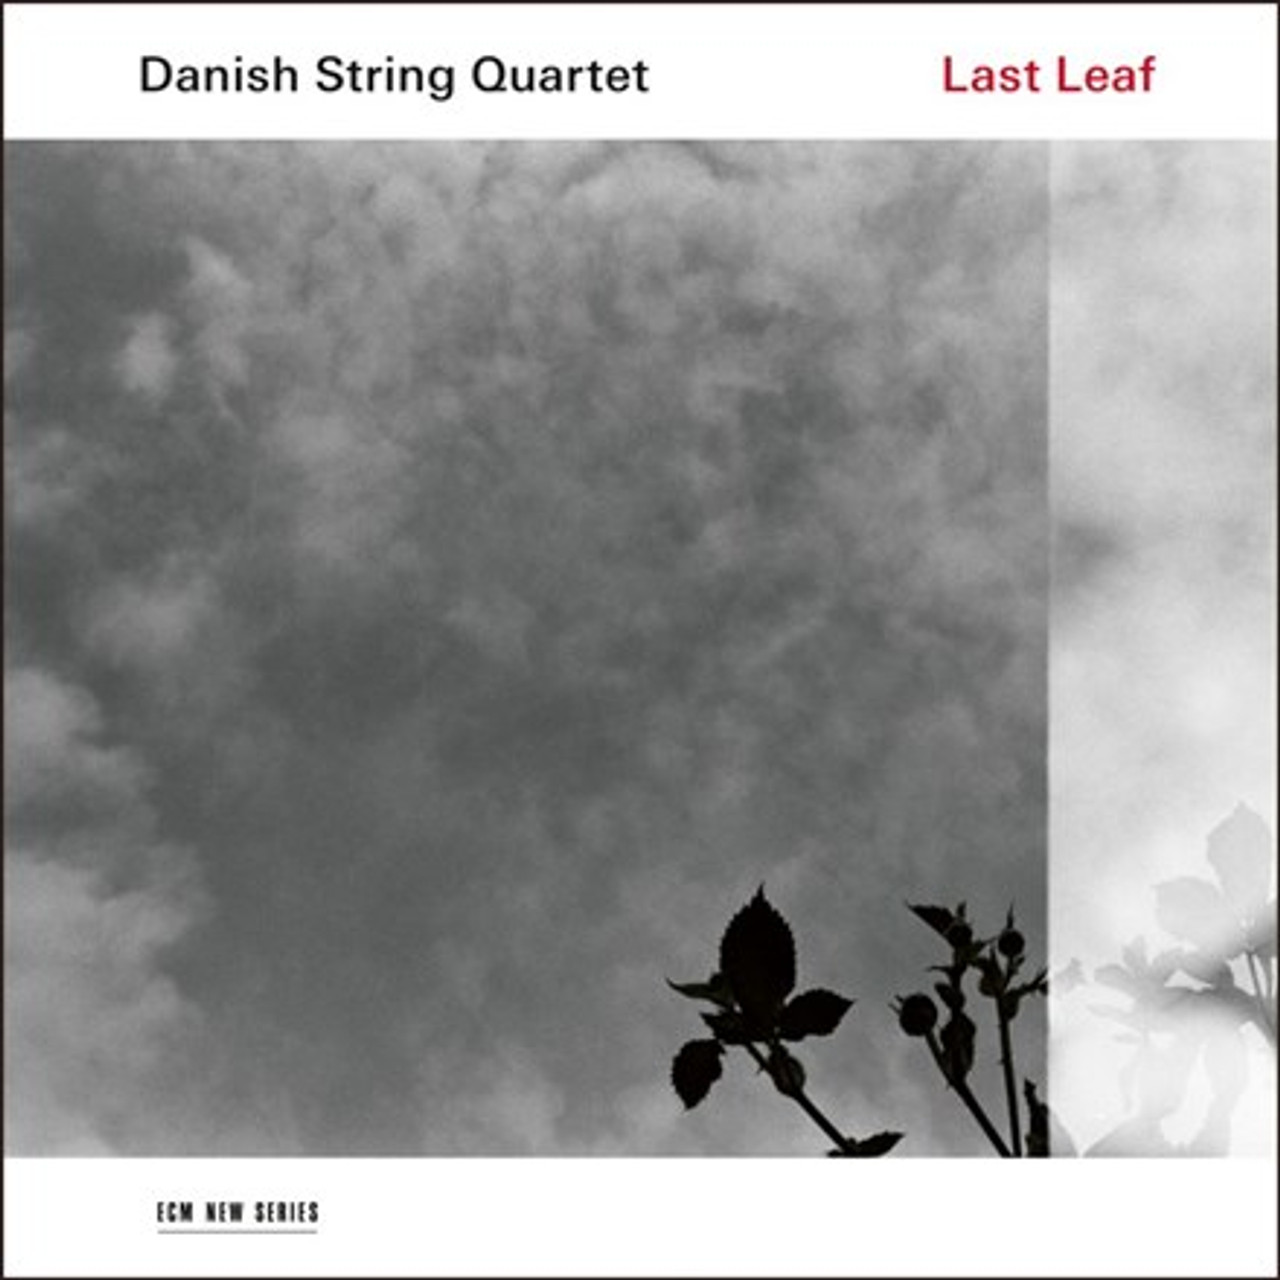 Souvenir universitetsområde ven Danish String Quartet - Last Leaf (180g Vinyl LP) - Music Direct